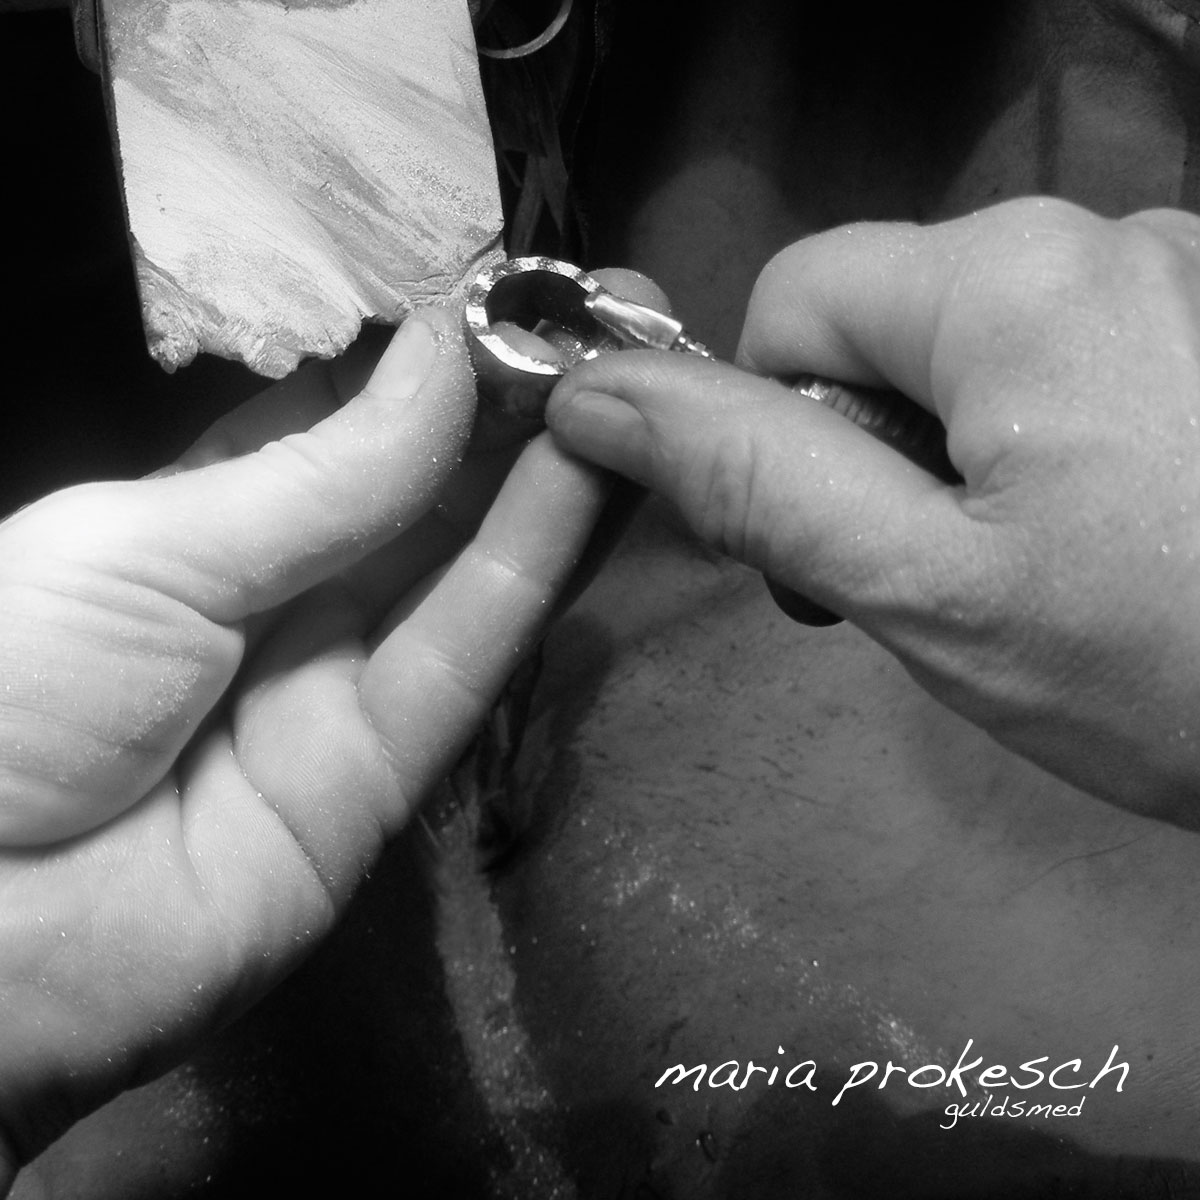 Guldsmeden Maria arbejder med et stort udvalg af personlige smykker. Alle bliver håndlavet. Vielsesringene har mange fine detaljer og muligheder